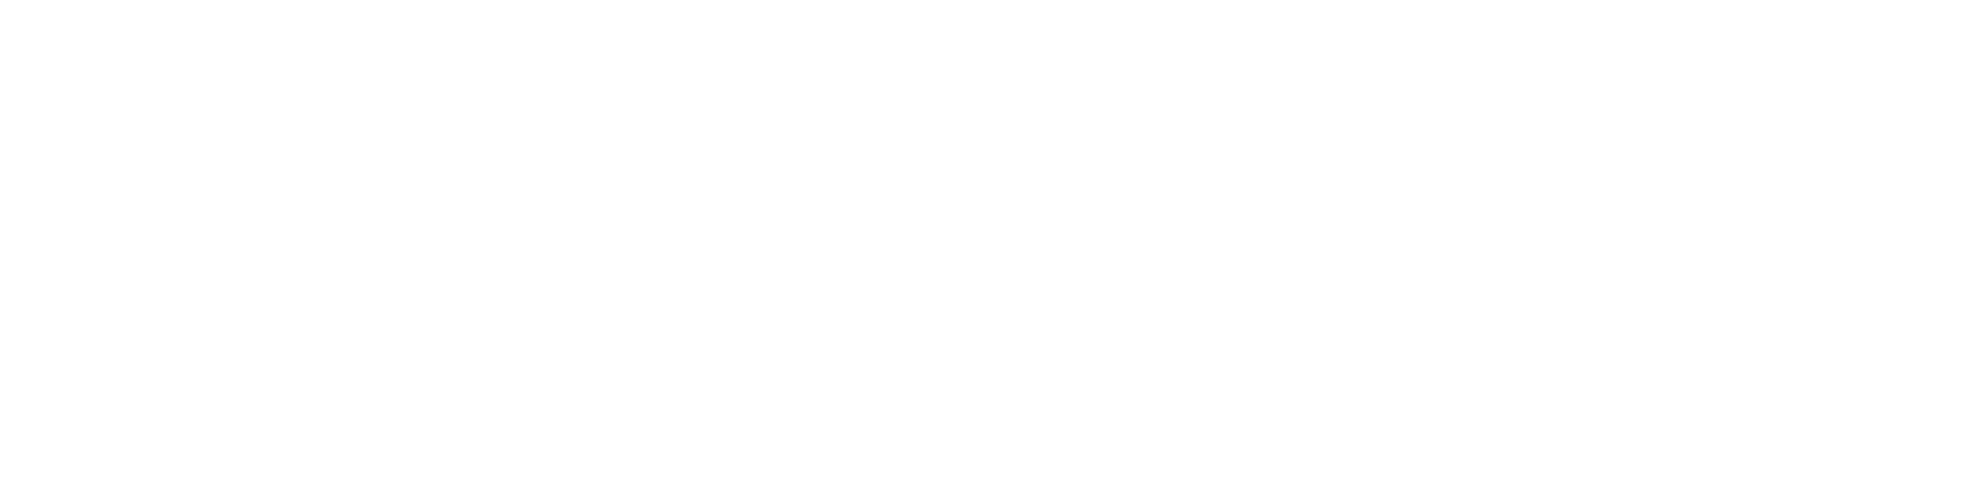 Centro Snowboard – Z-One – Noleggio Sci Snowboard